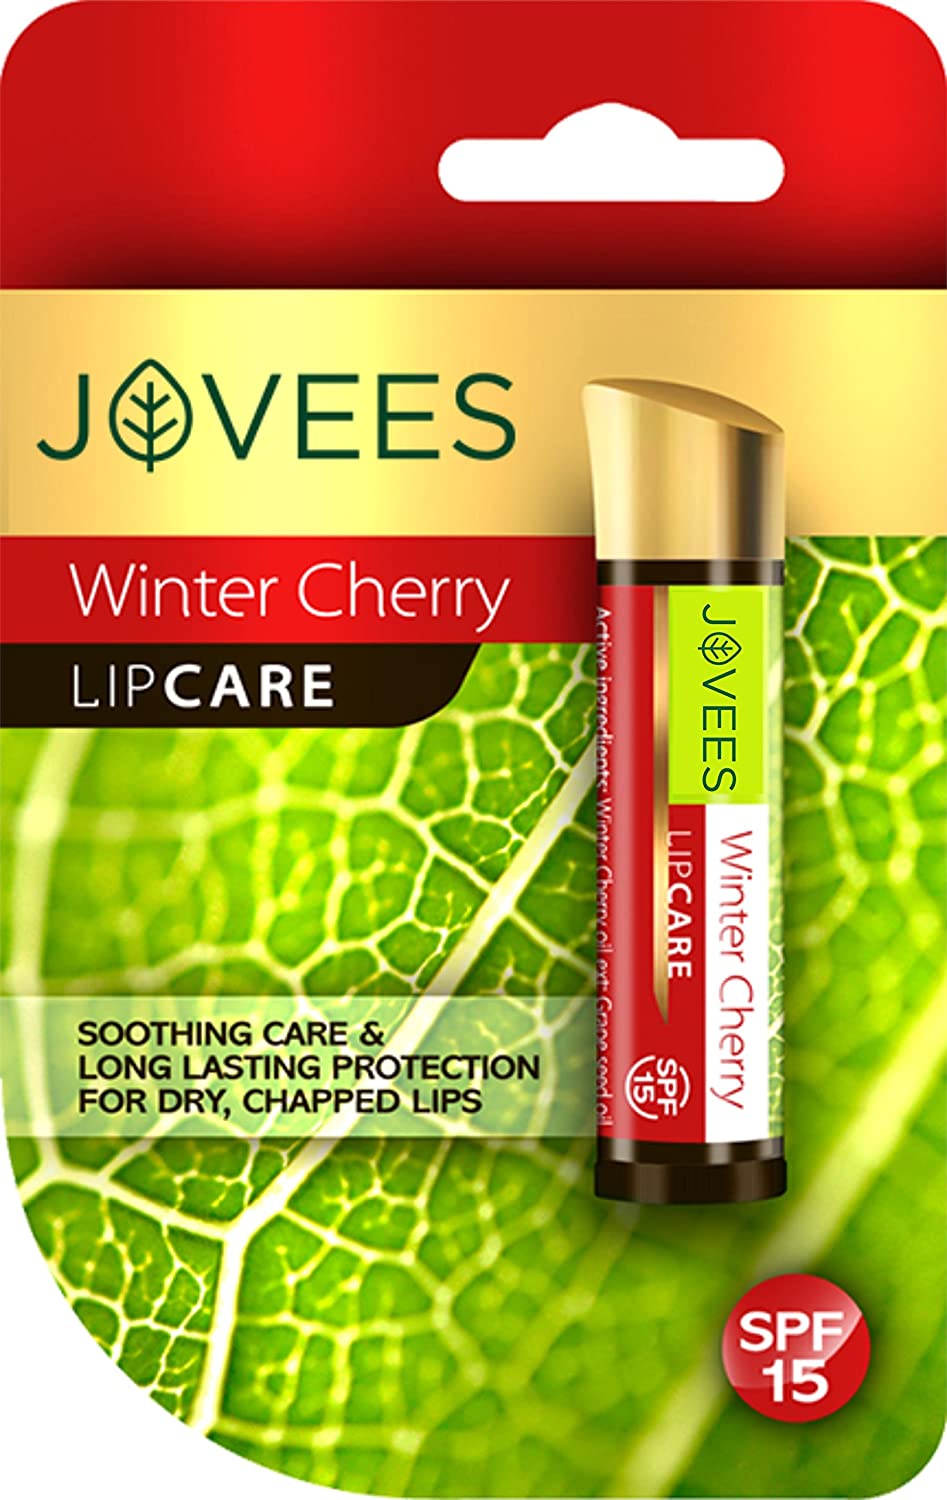 Winter Cherry Lip Care